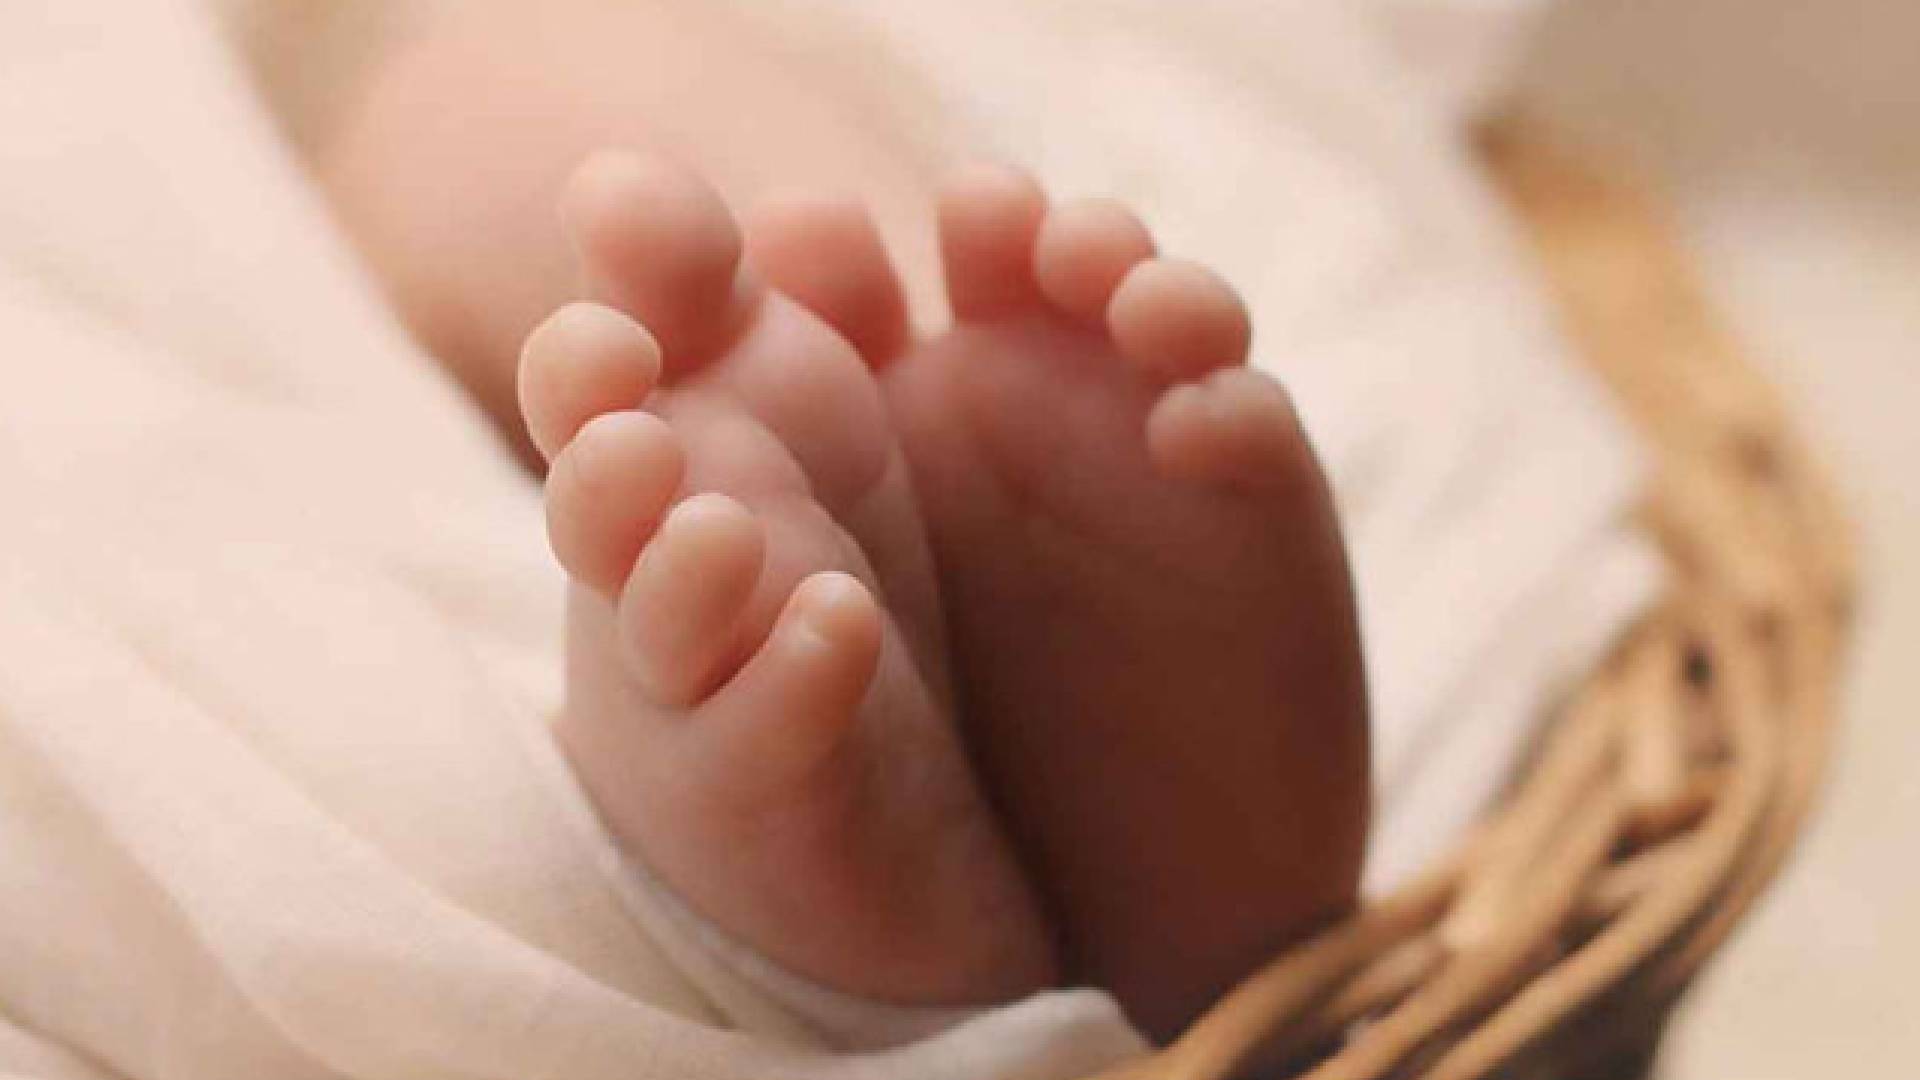 Padrastro golpea a una bebé de 6 meses en Sinaloa; fue trasladada al hospital con fractura piernas.